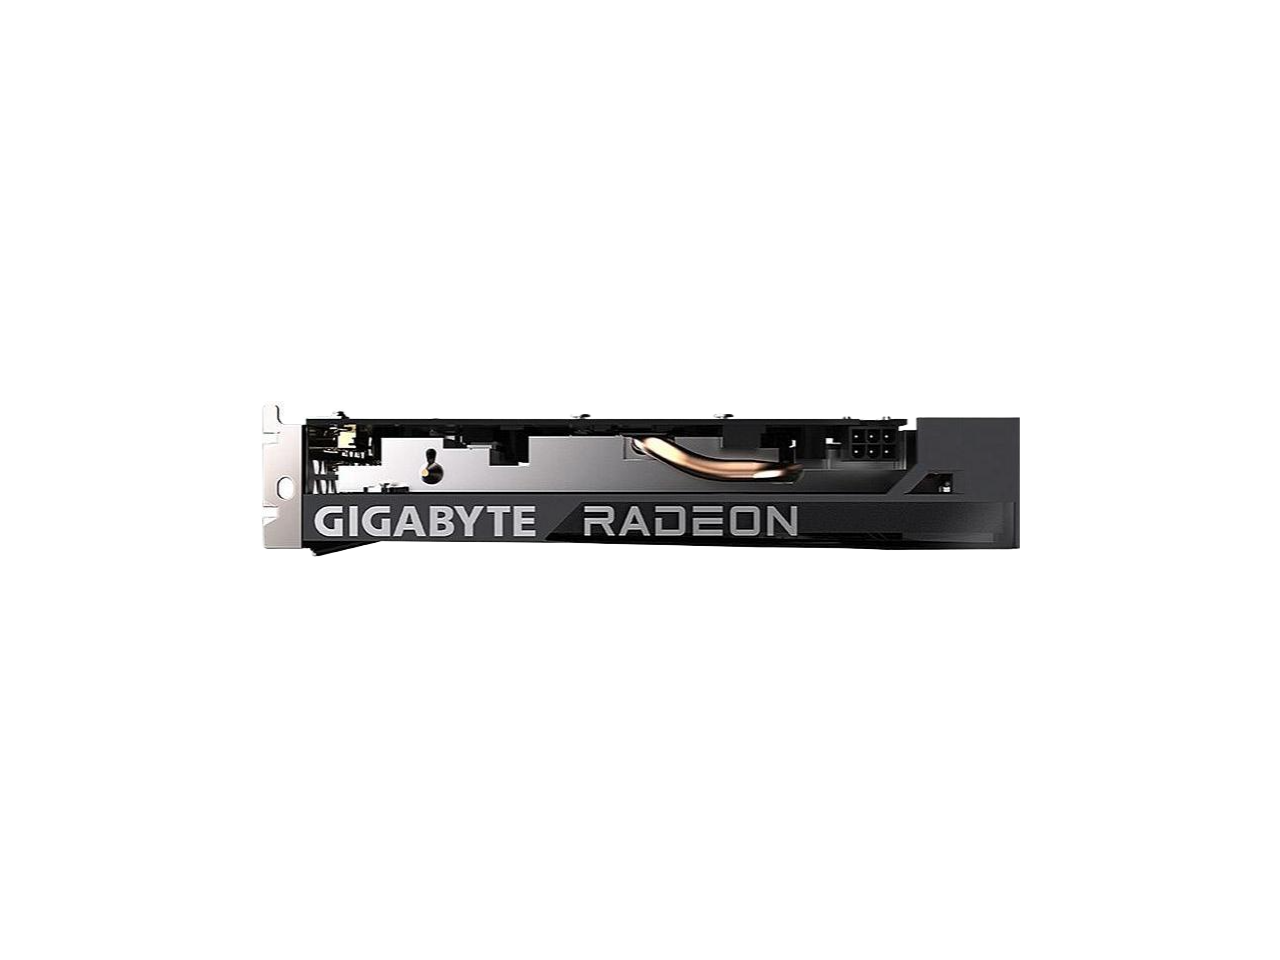 GIGABYTE Radeon RX 6500 XT EAGLE 4GB 64-bit GDDR6 Support PCI Express 4.0,1 x HDMI, 1 x DisplayPort Graphics Card RX 6500 XT EAGLE 4G